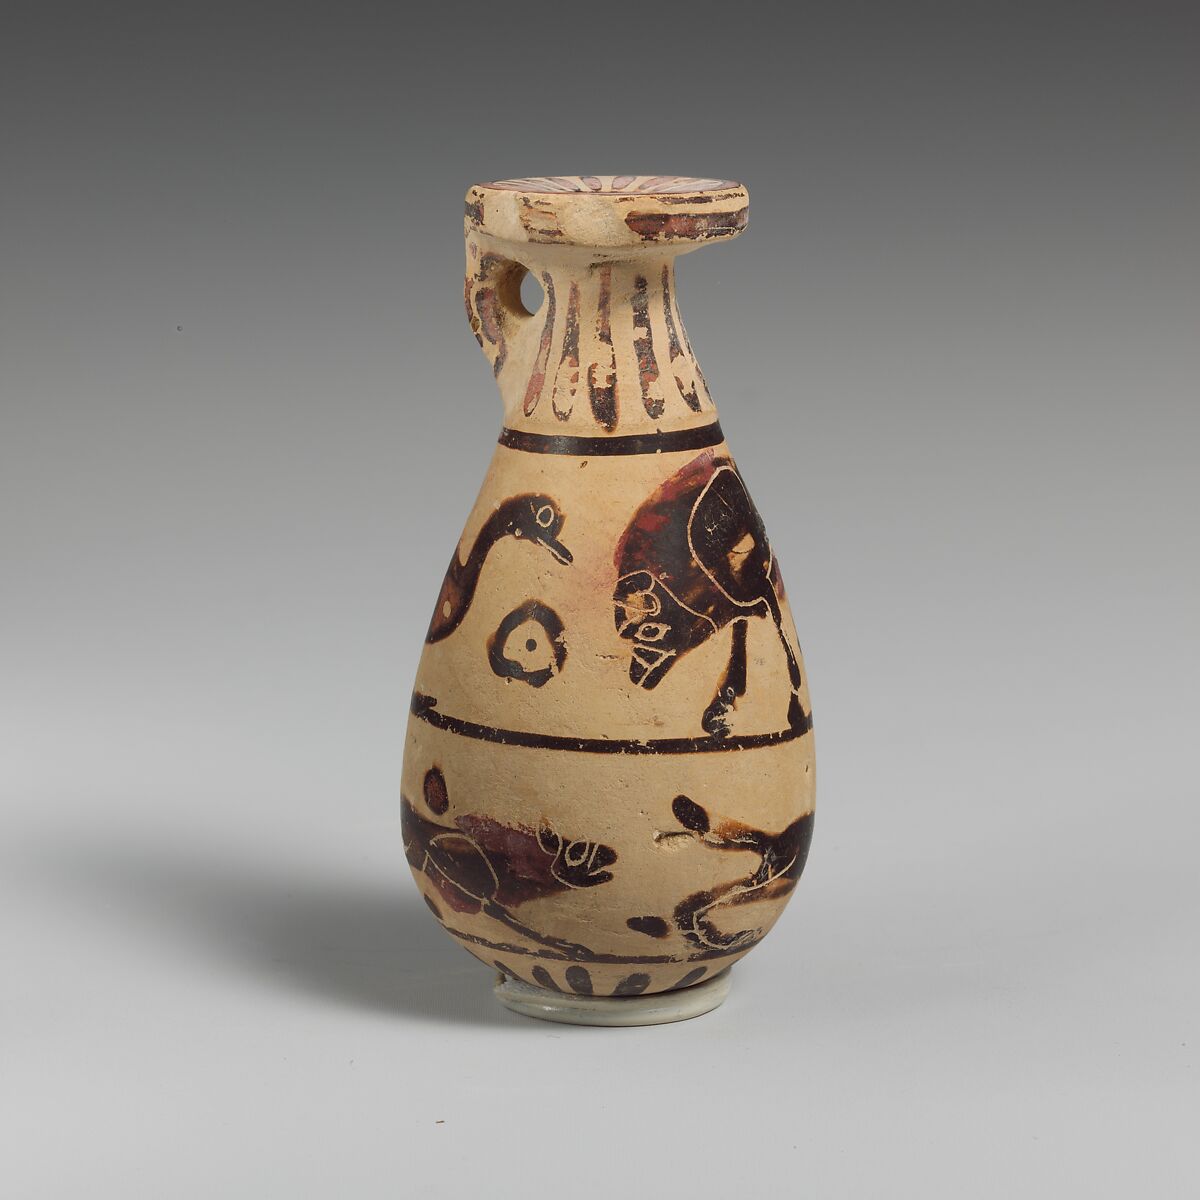 Terracotta alabastron (perfume vase), Attributed to the Kerameikos Group, Terracotta, Greek, Corinthian 